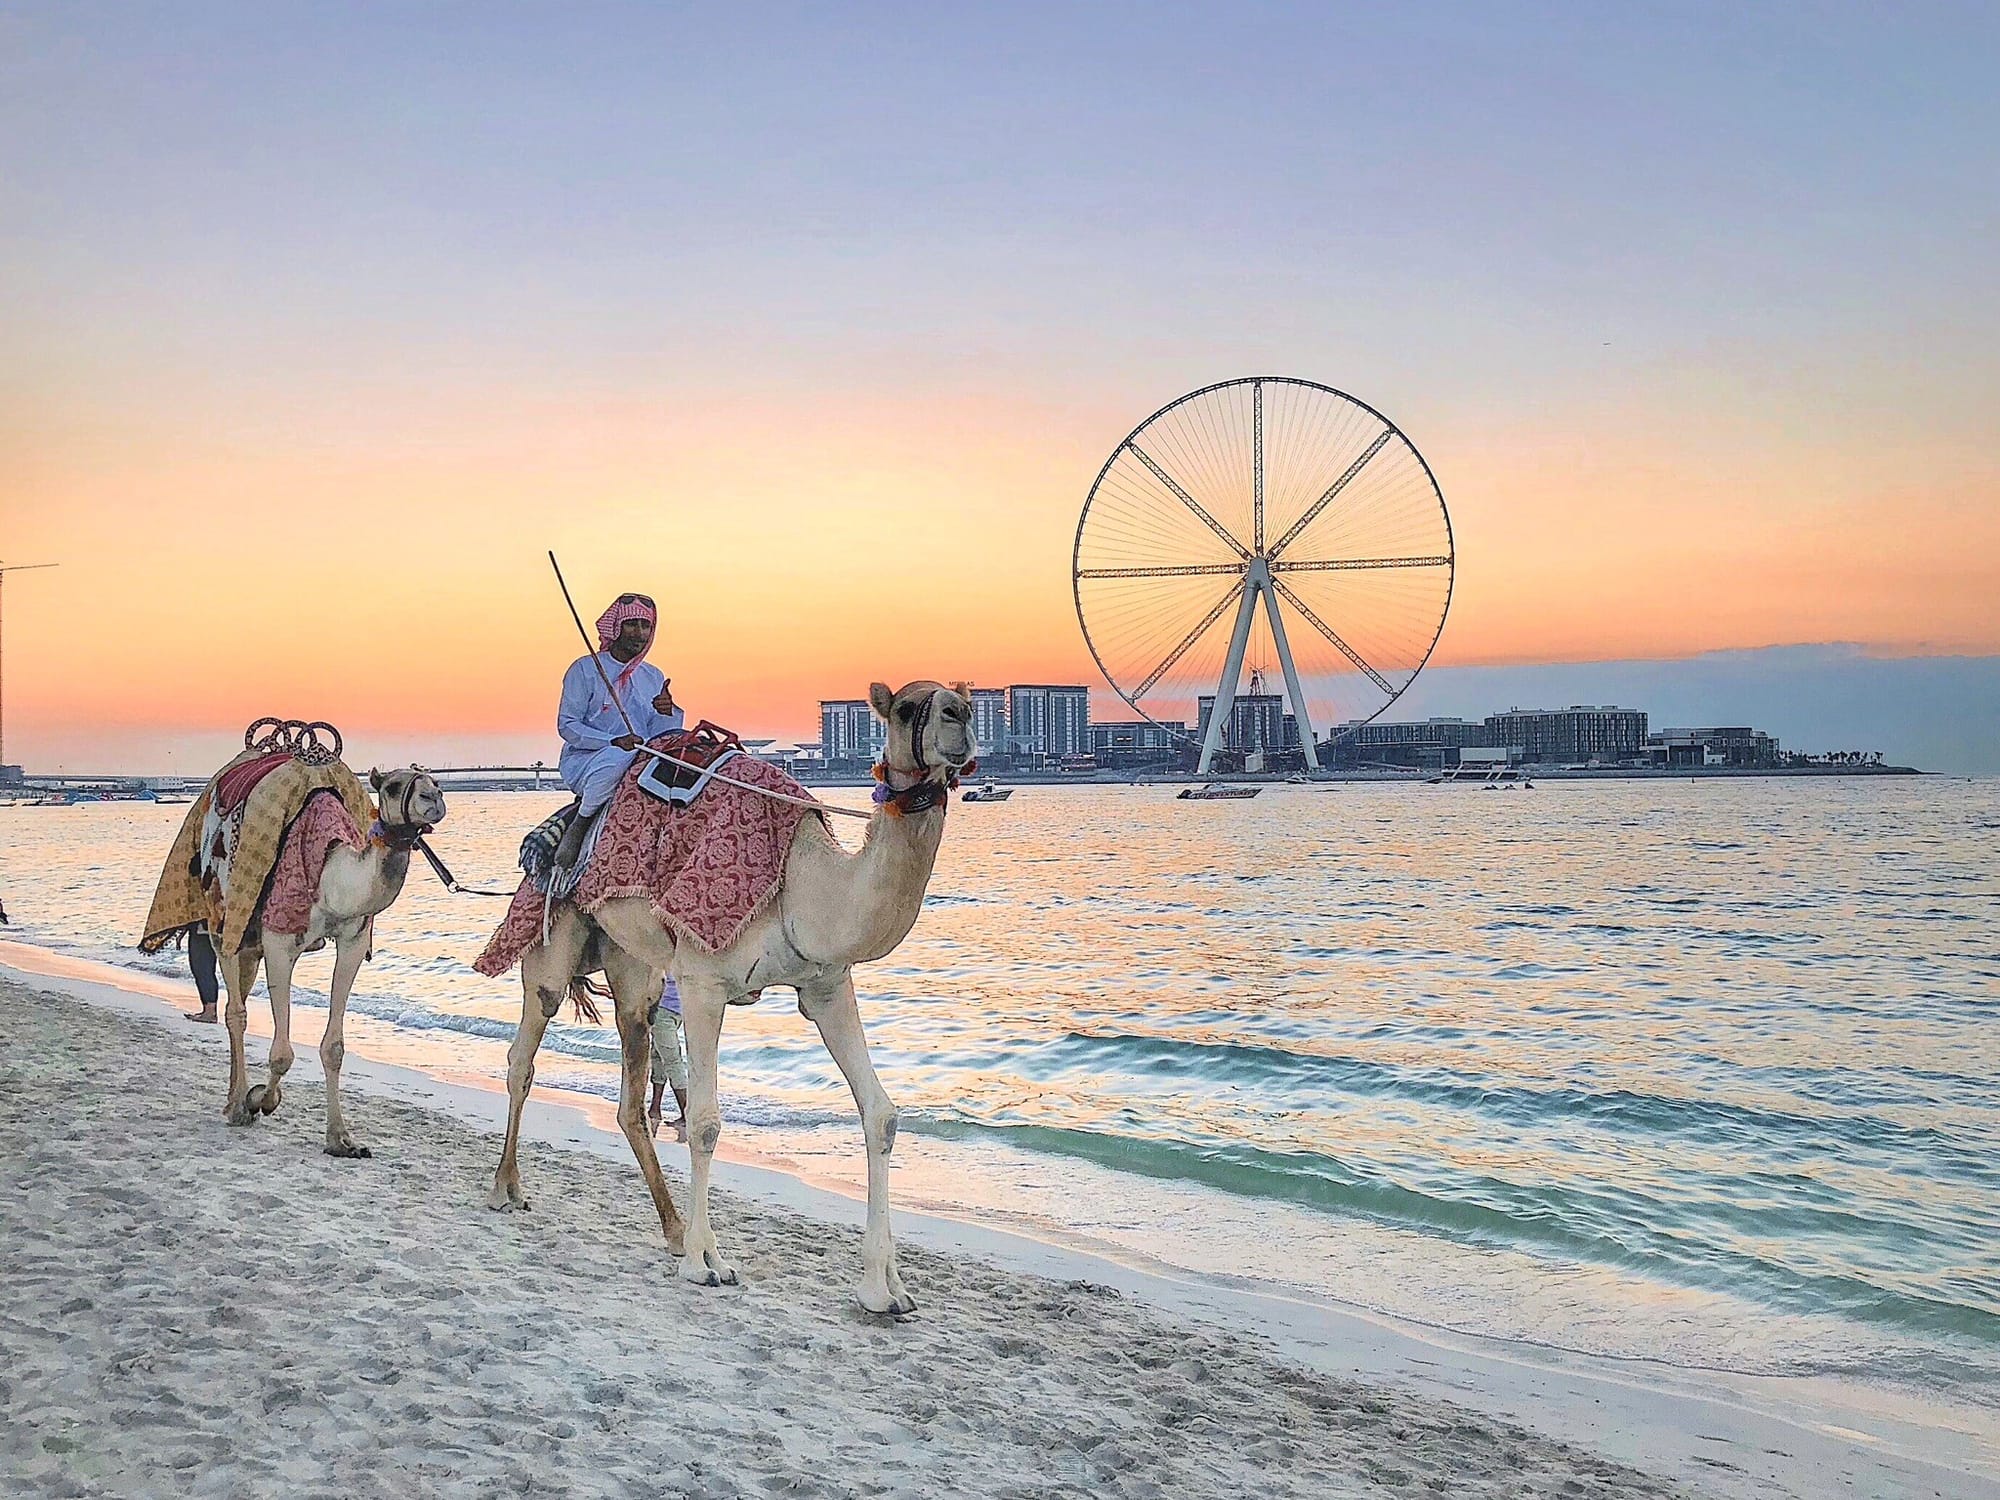 «Арабы пристают, в пустыню увезут». Туристка раскрыла правду про опасности для русских девушек в Дубае